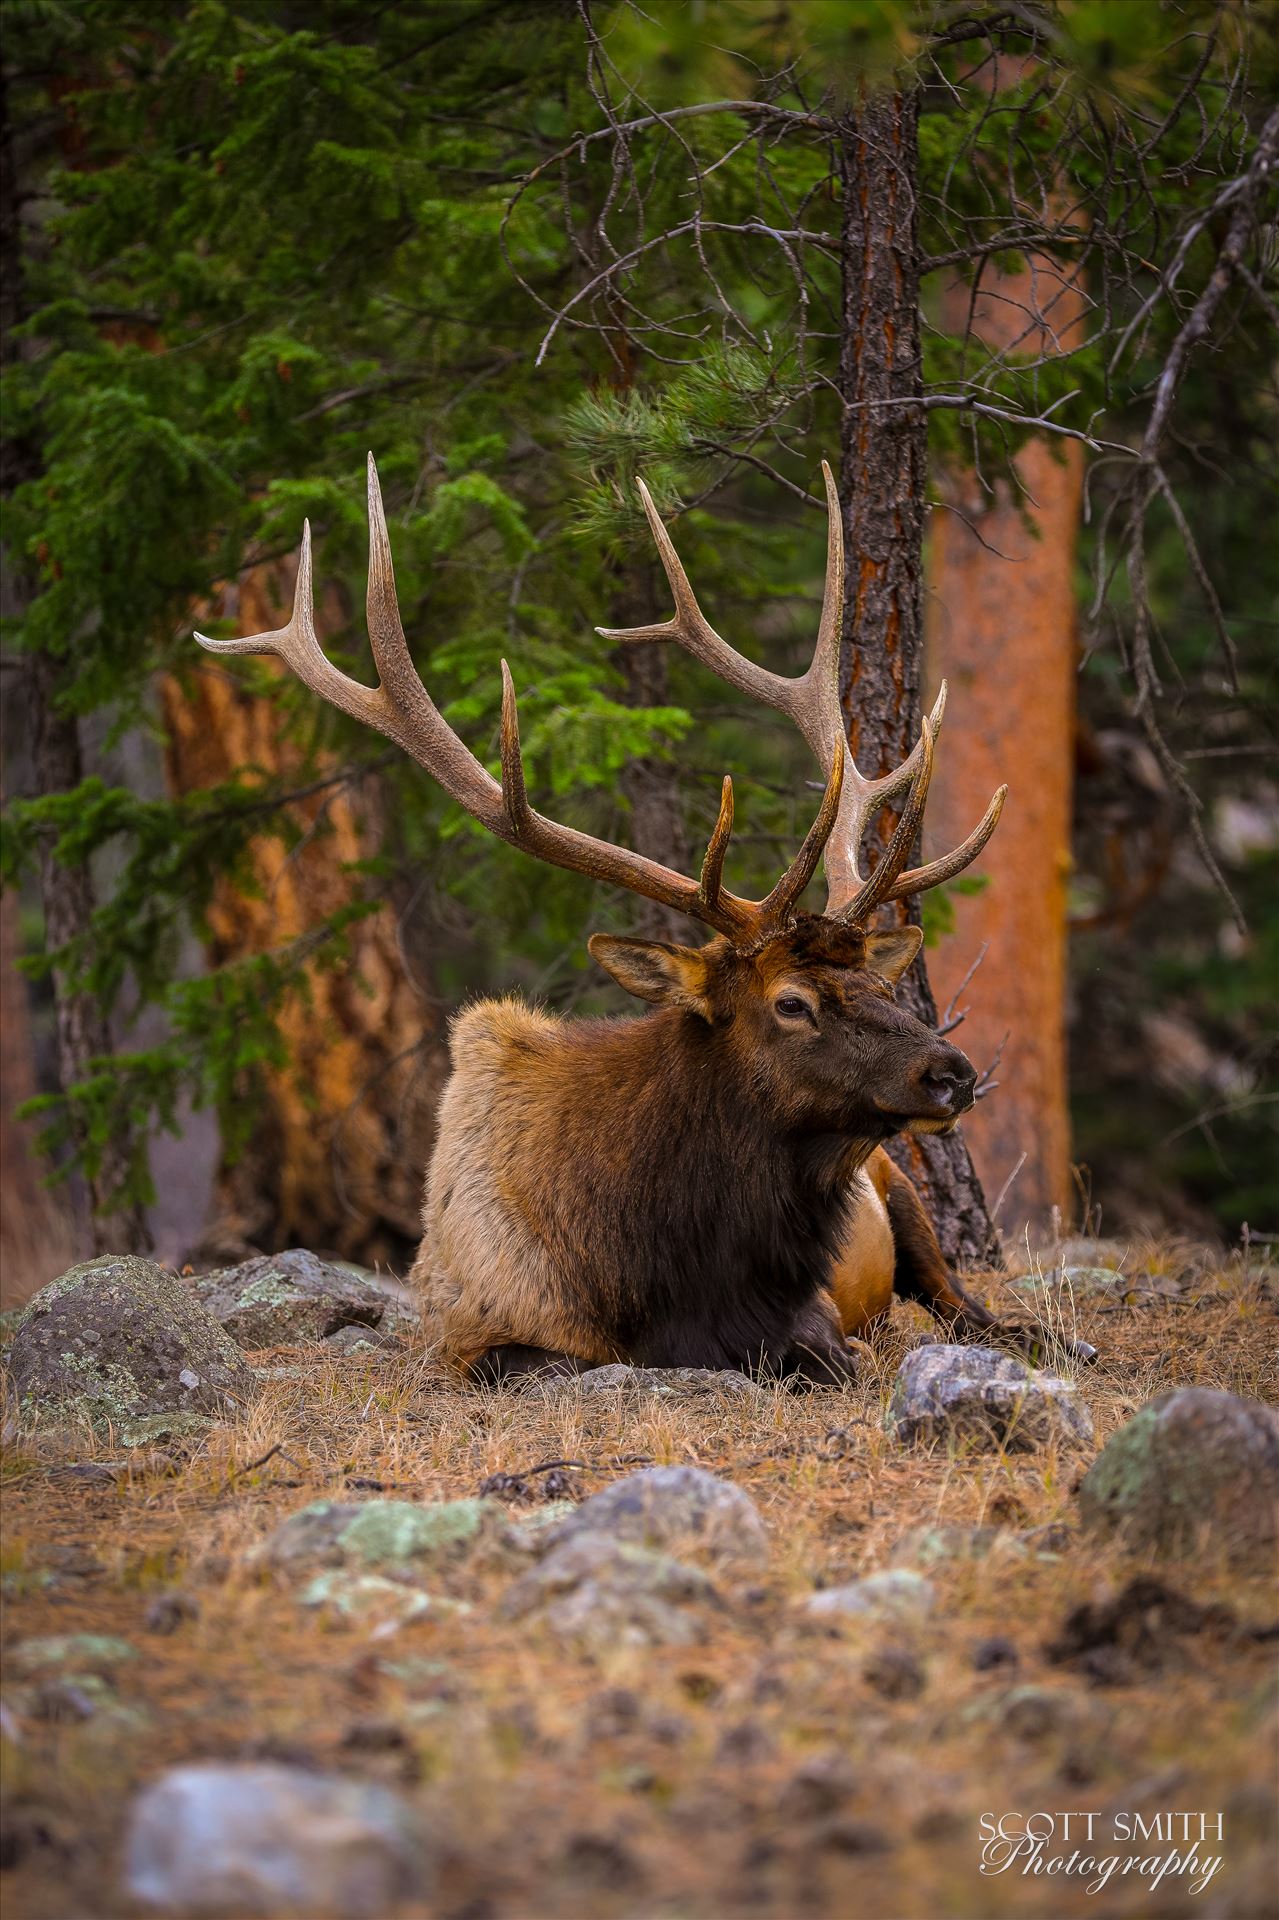 Sunday Elk No 06 A heard of Elk near the entrance to Rocky Mountain National Park, Estes Park, Colorado. by Scott Smith Photos